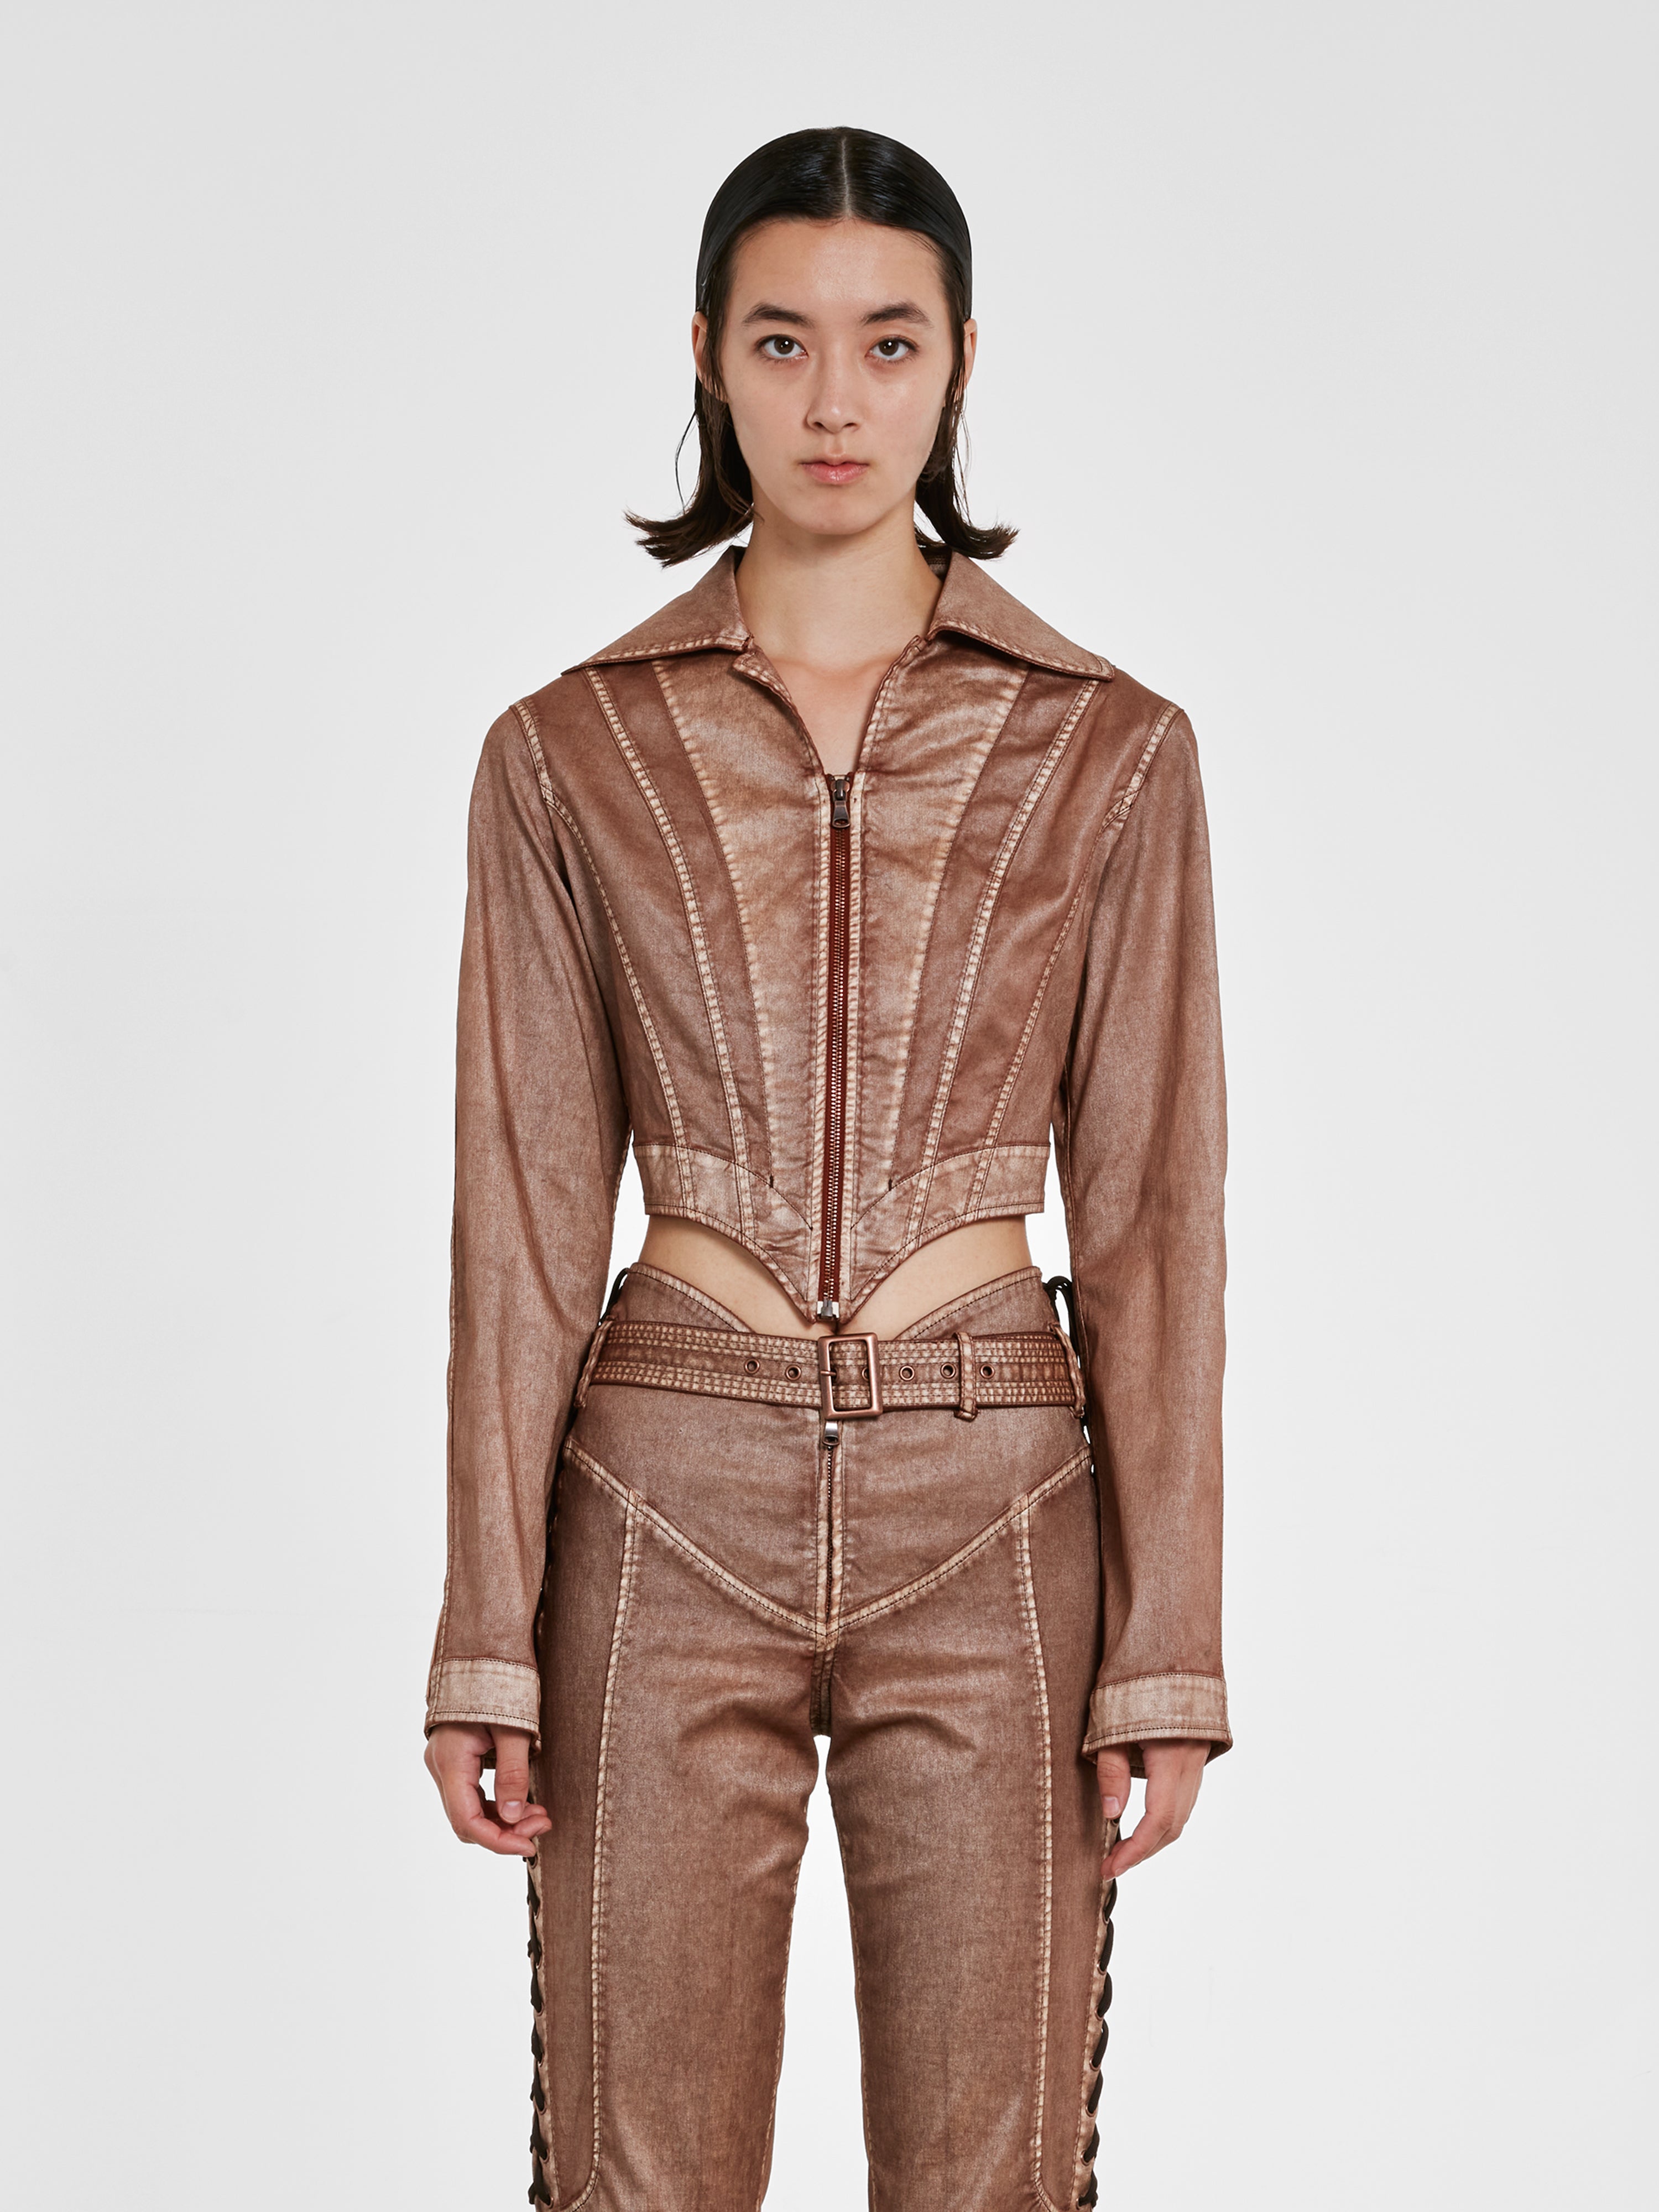 x KNWLS cutout leather bustier in brown - Jean Paul Gaultier